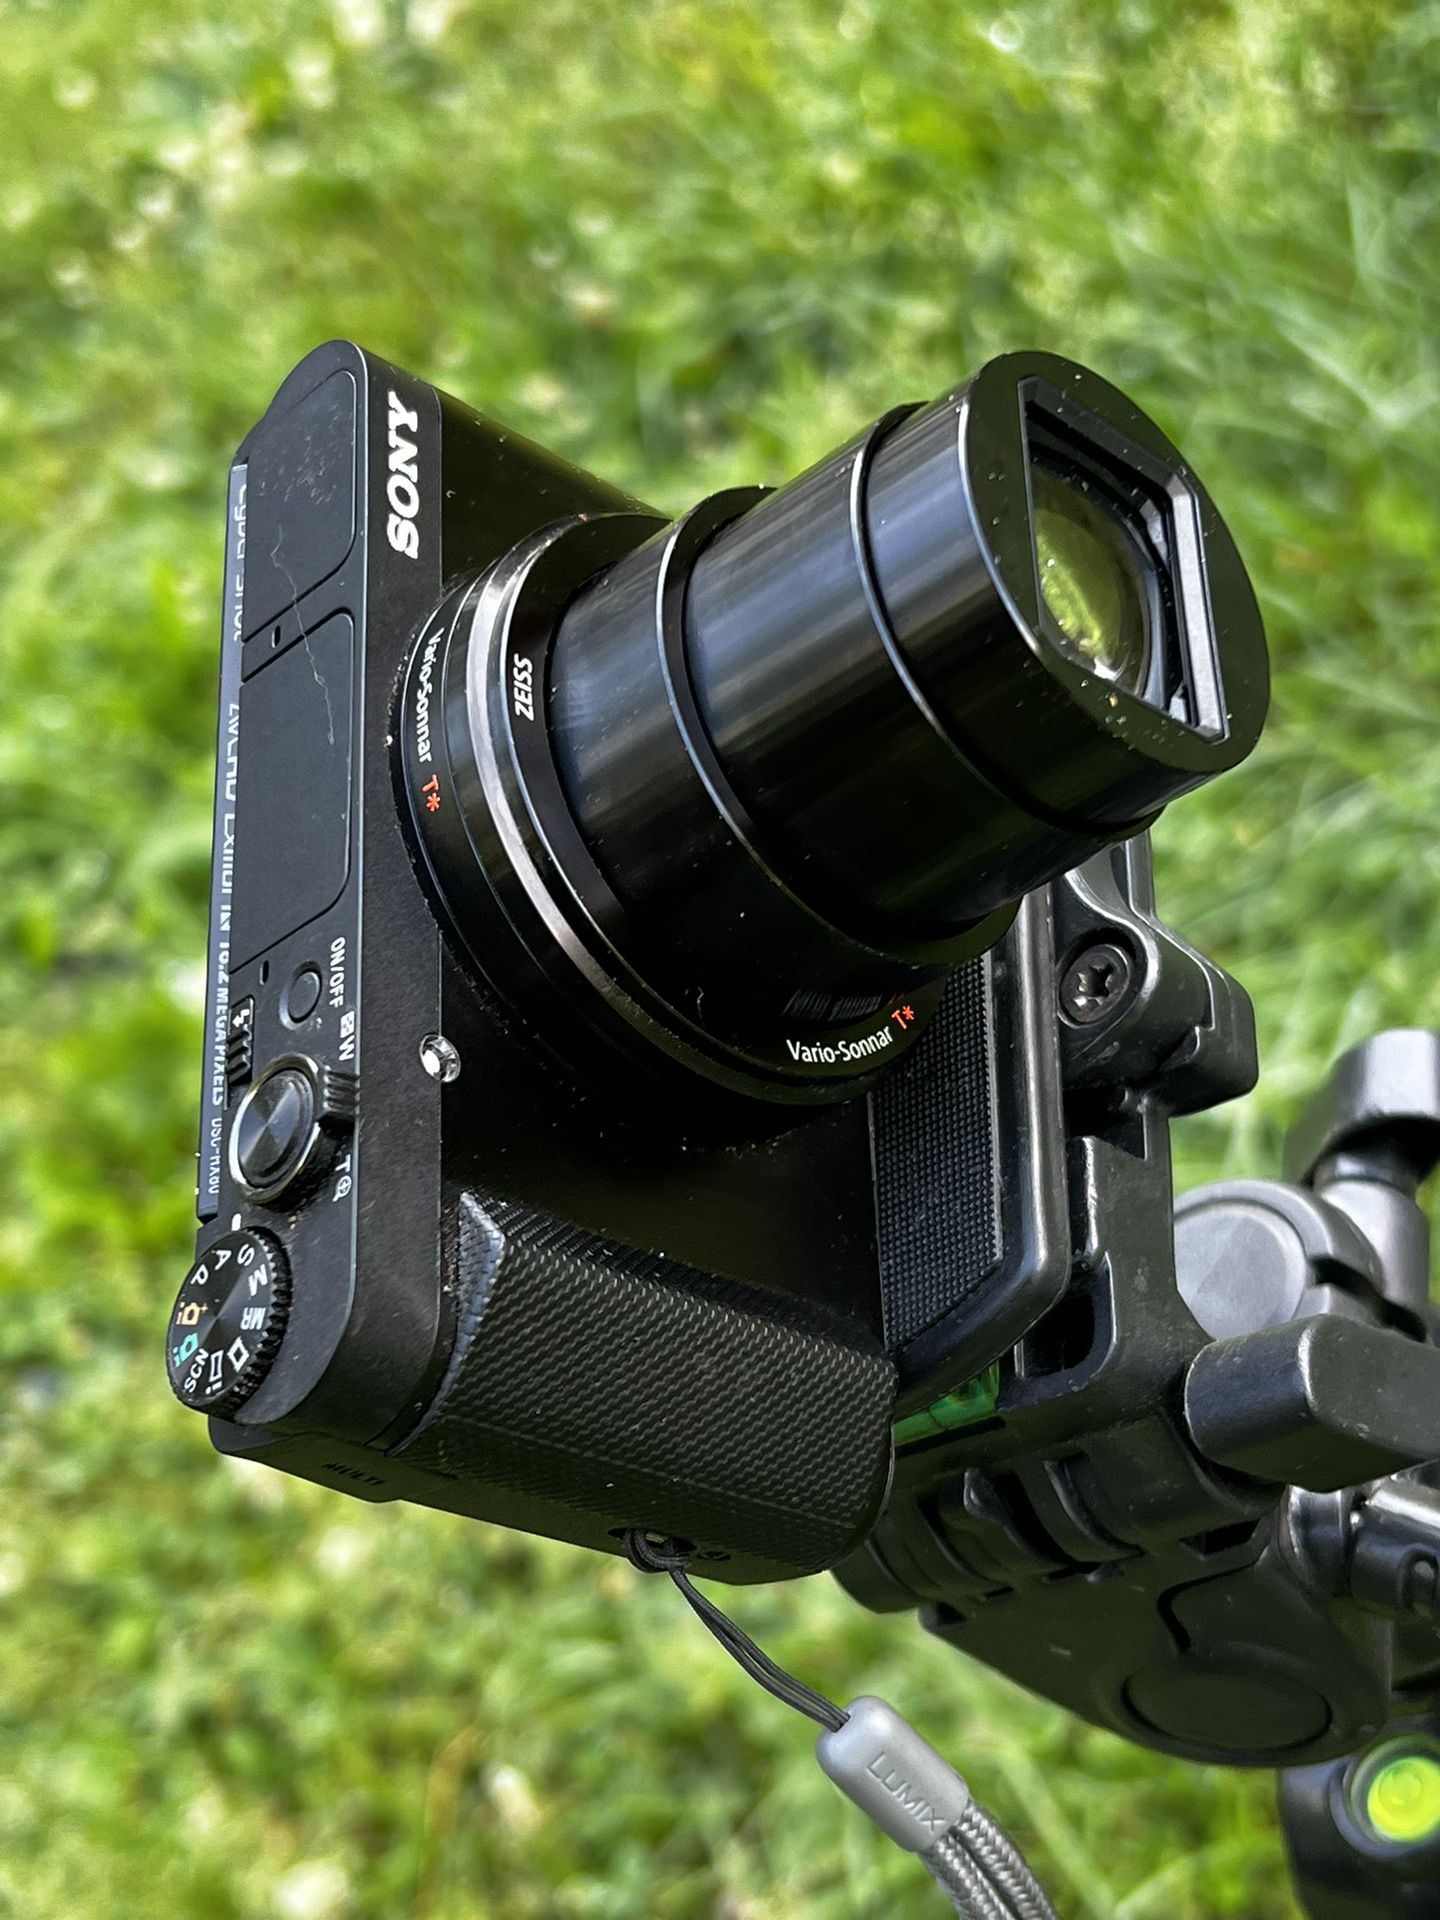 SONY DSCHX80 Vlog Camera